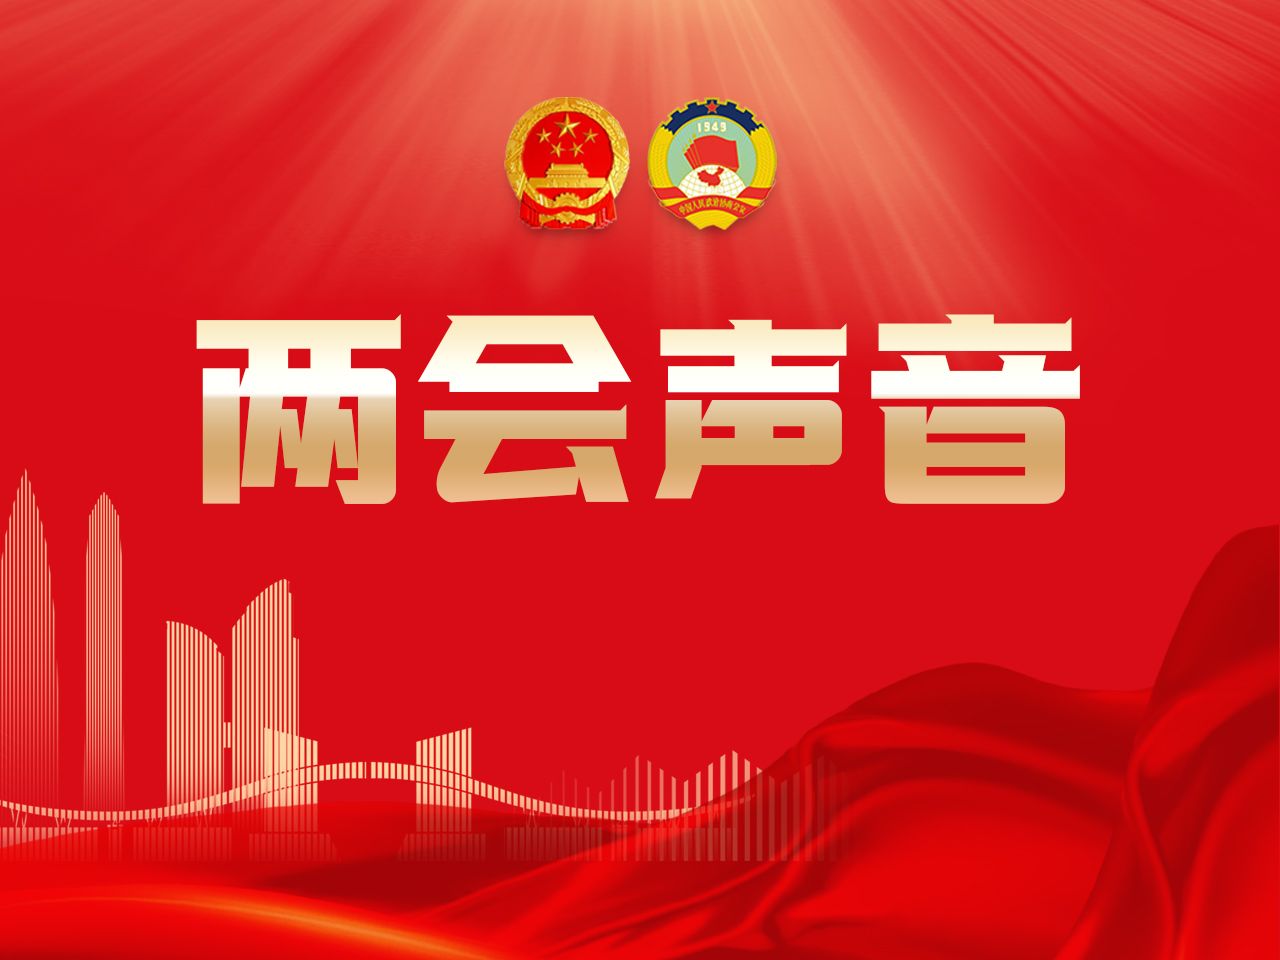 聚焦文化事业和文化产业繁荣发展，深圳政协委员聚力发出“强声量” 